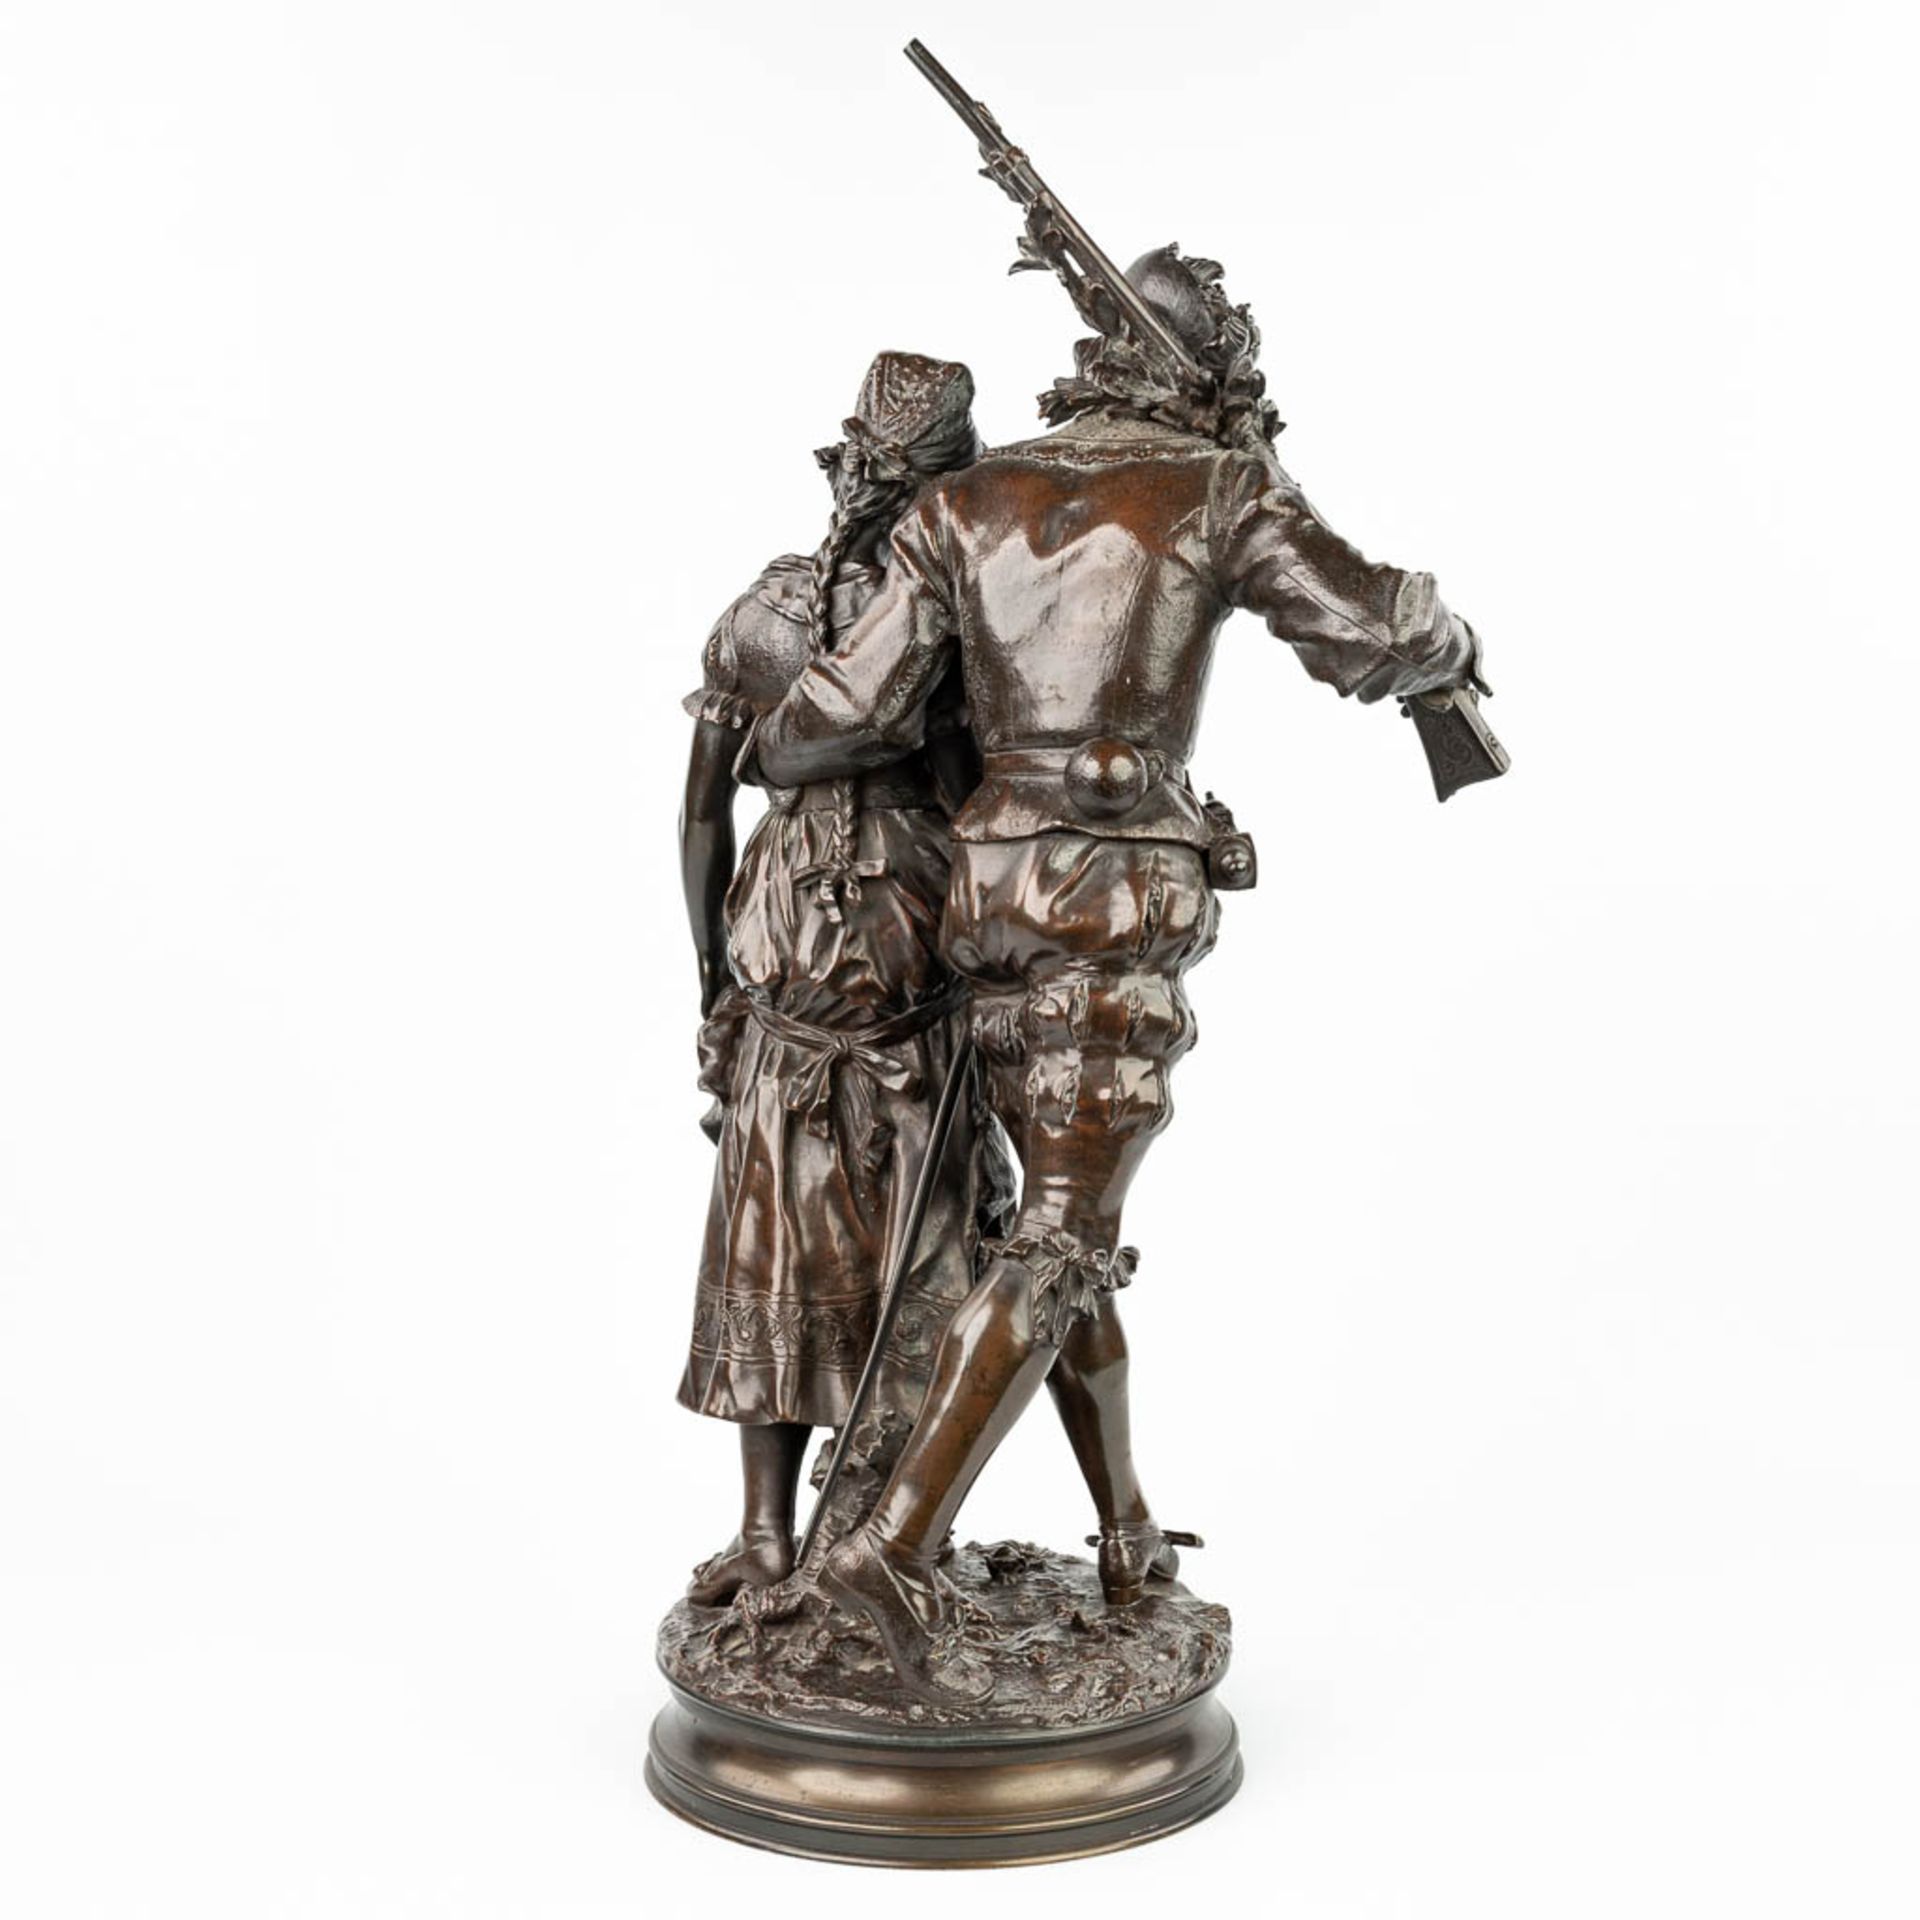 Adrien Etienne GAUDEZ (1845-1902) 'Retour de Chasse' a bronze statue on a revolving base. (H:72cm) - Image 6 of 15